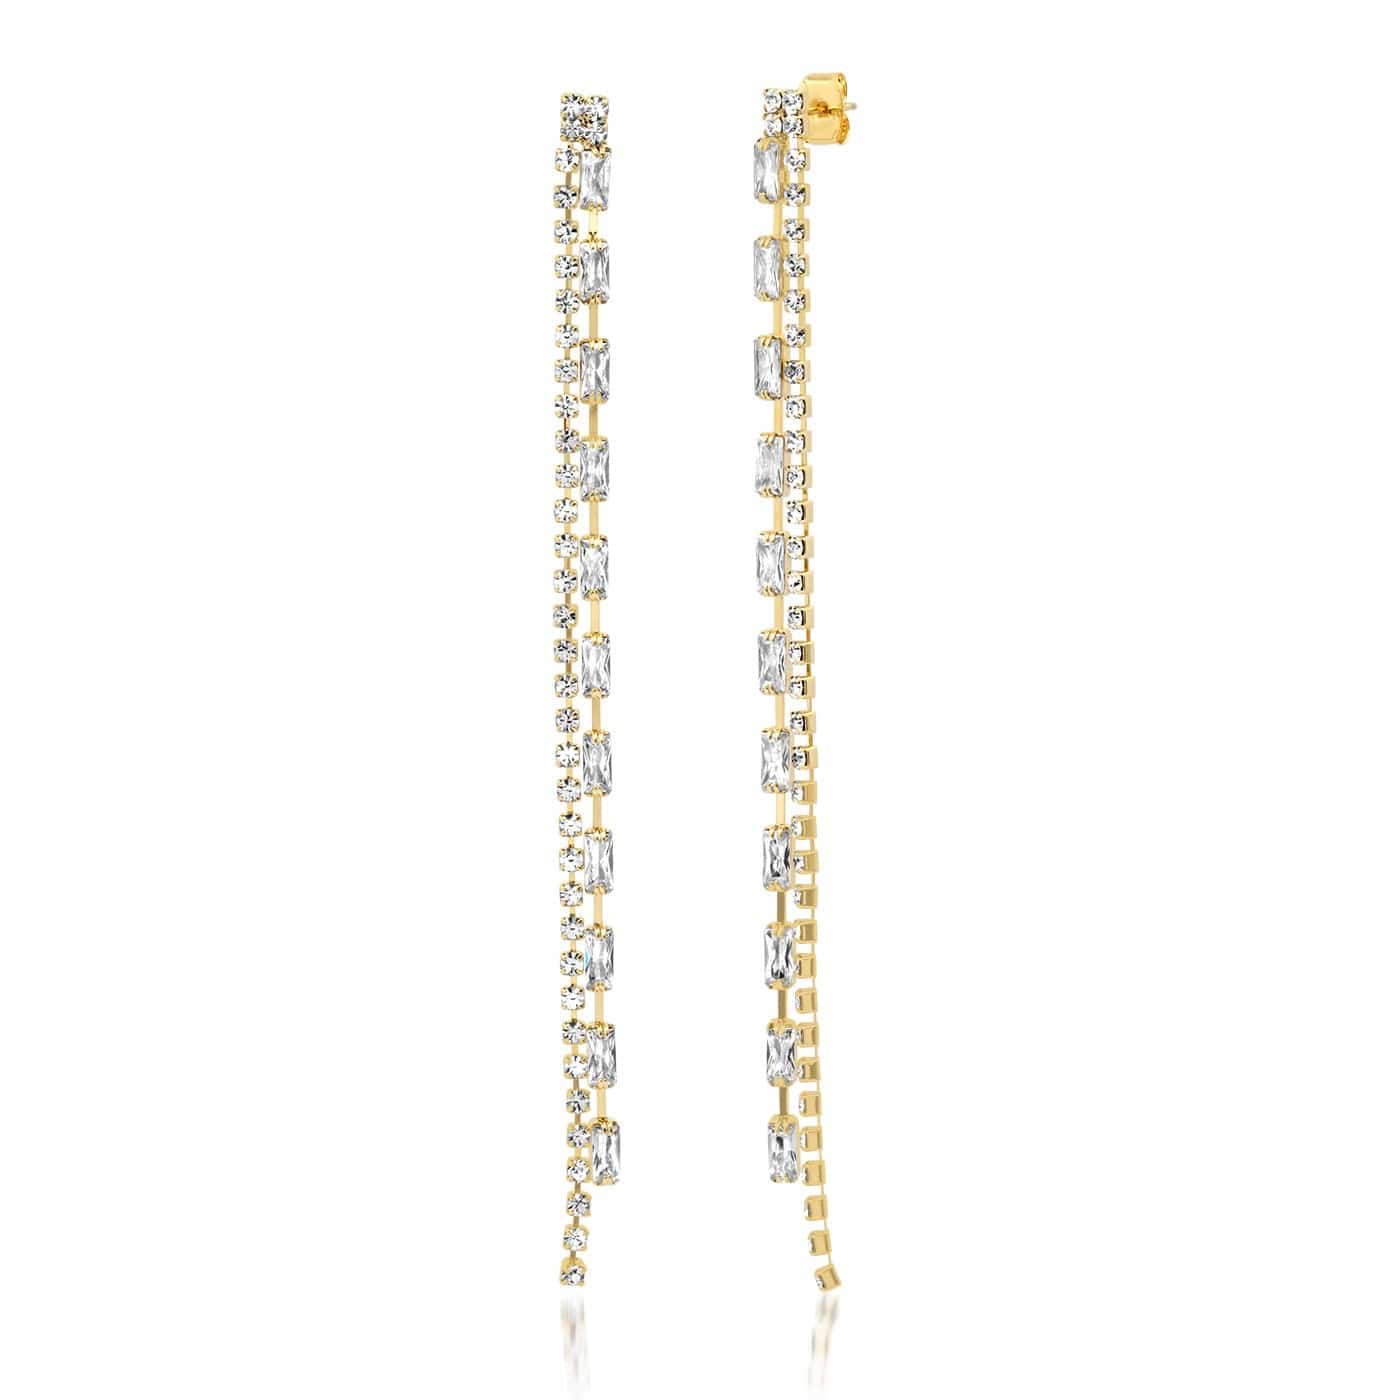 TAI JEWELRY Earrings Gold Multi-Chain CZ Linear Earrings